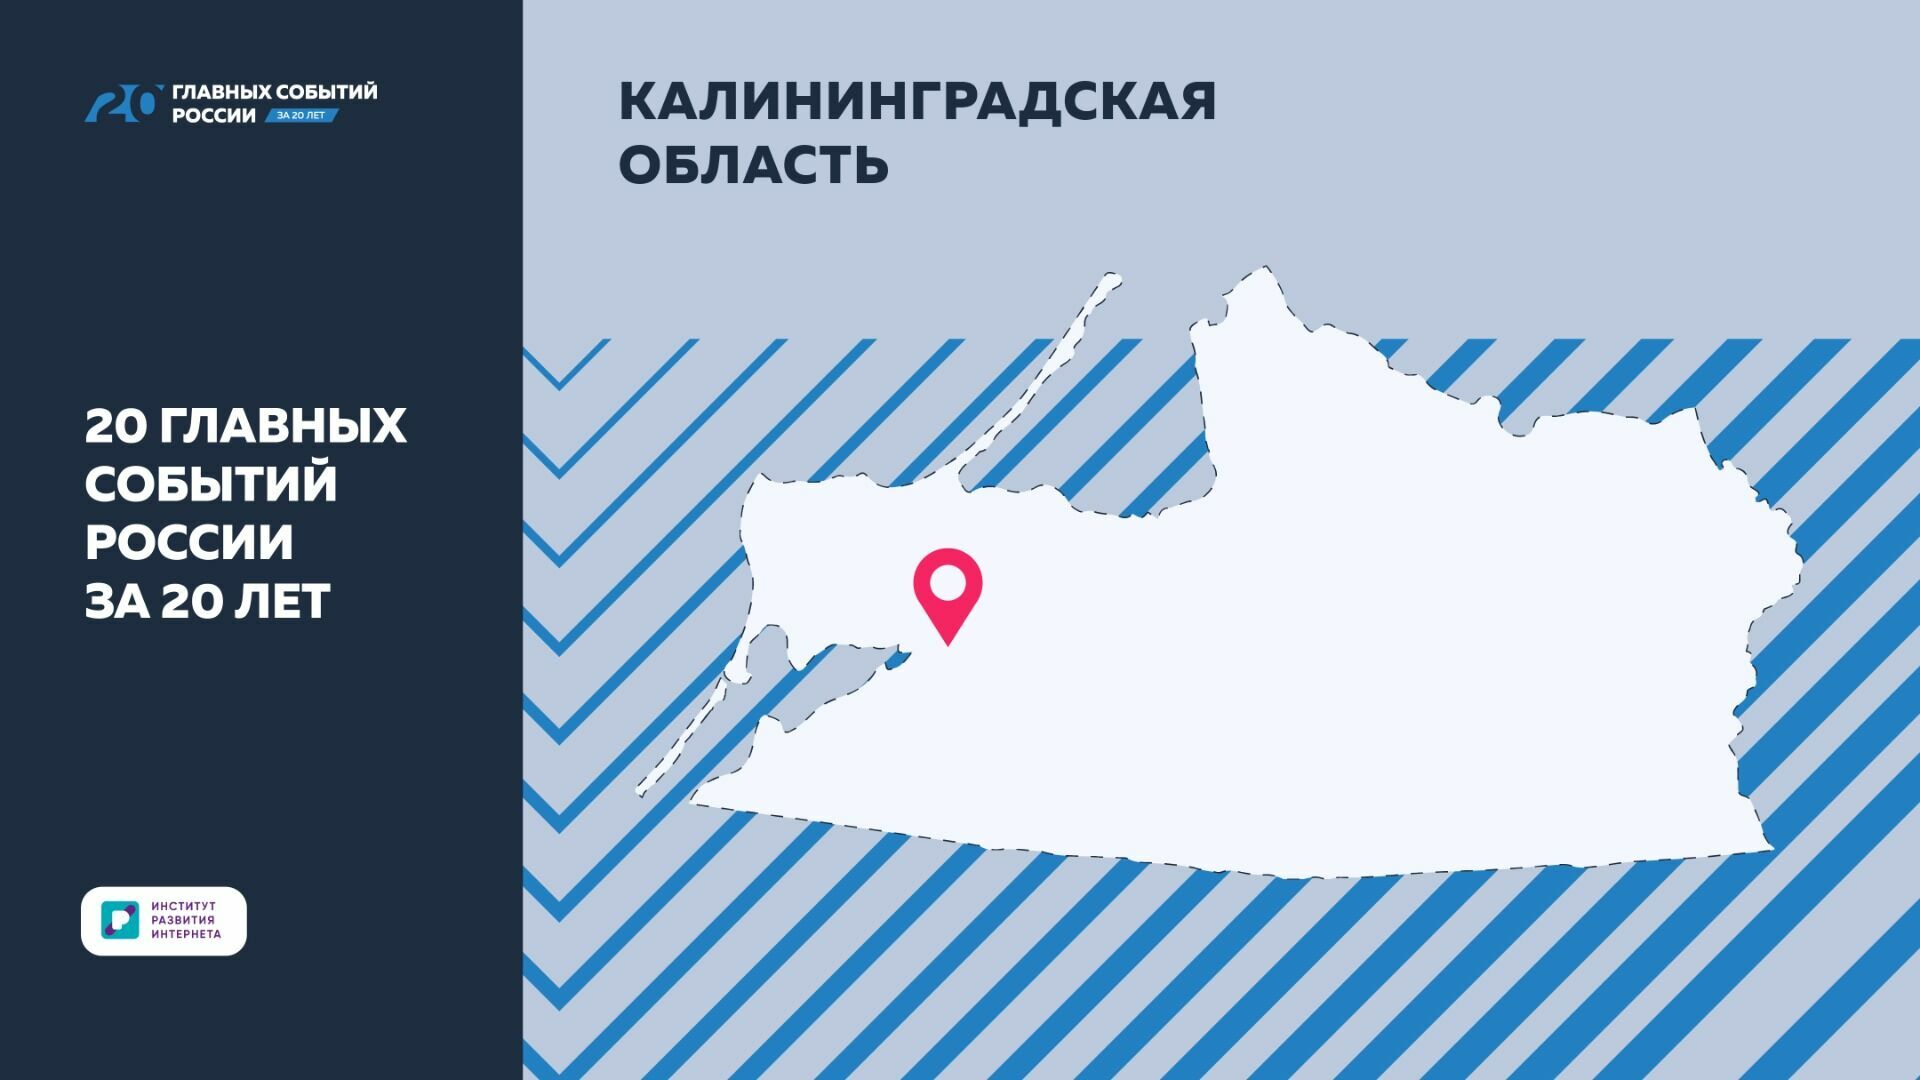 ИРИ: Достижения Калининградской области вошли в "20 главных событий РФ за 20 лет"